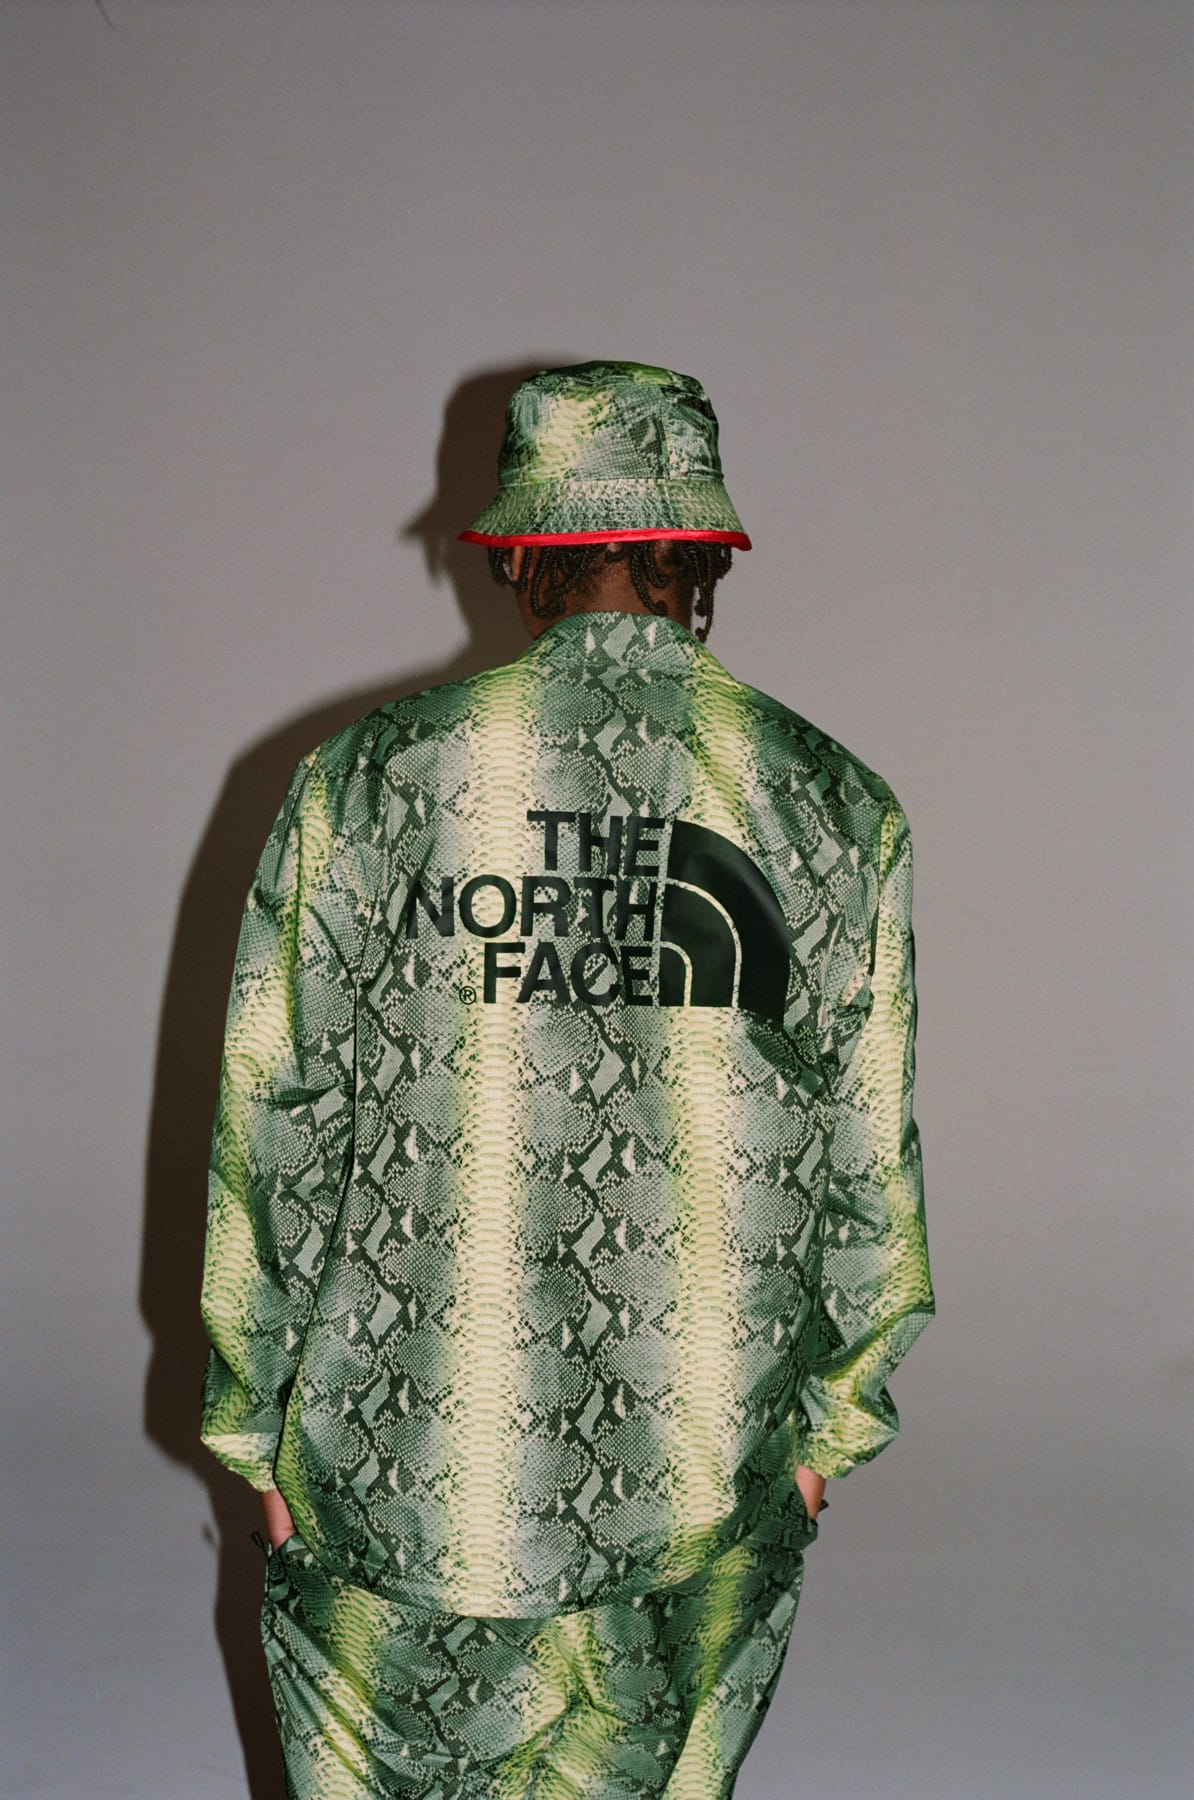 supreme north face backpack snakeskin